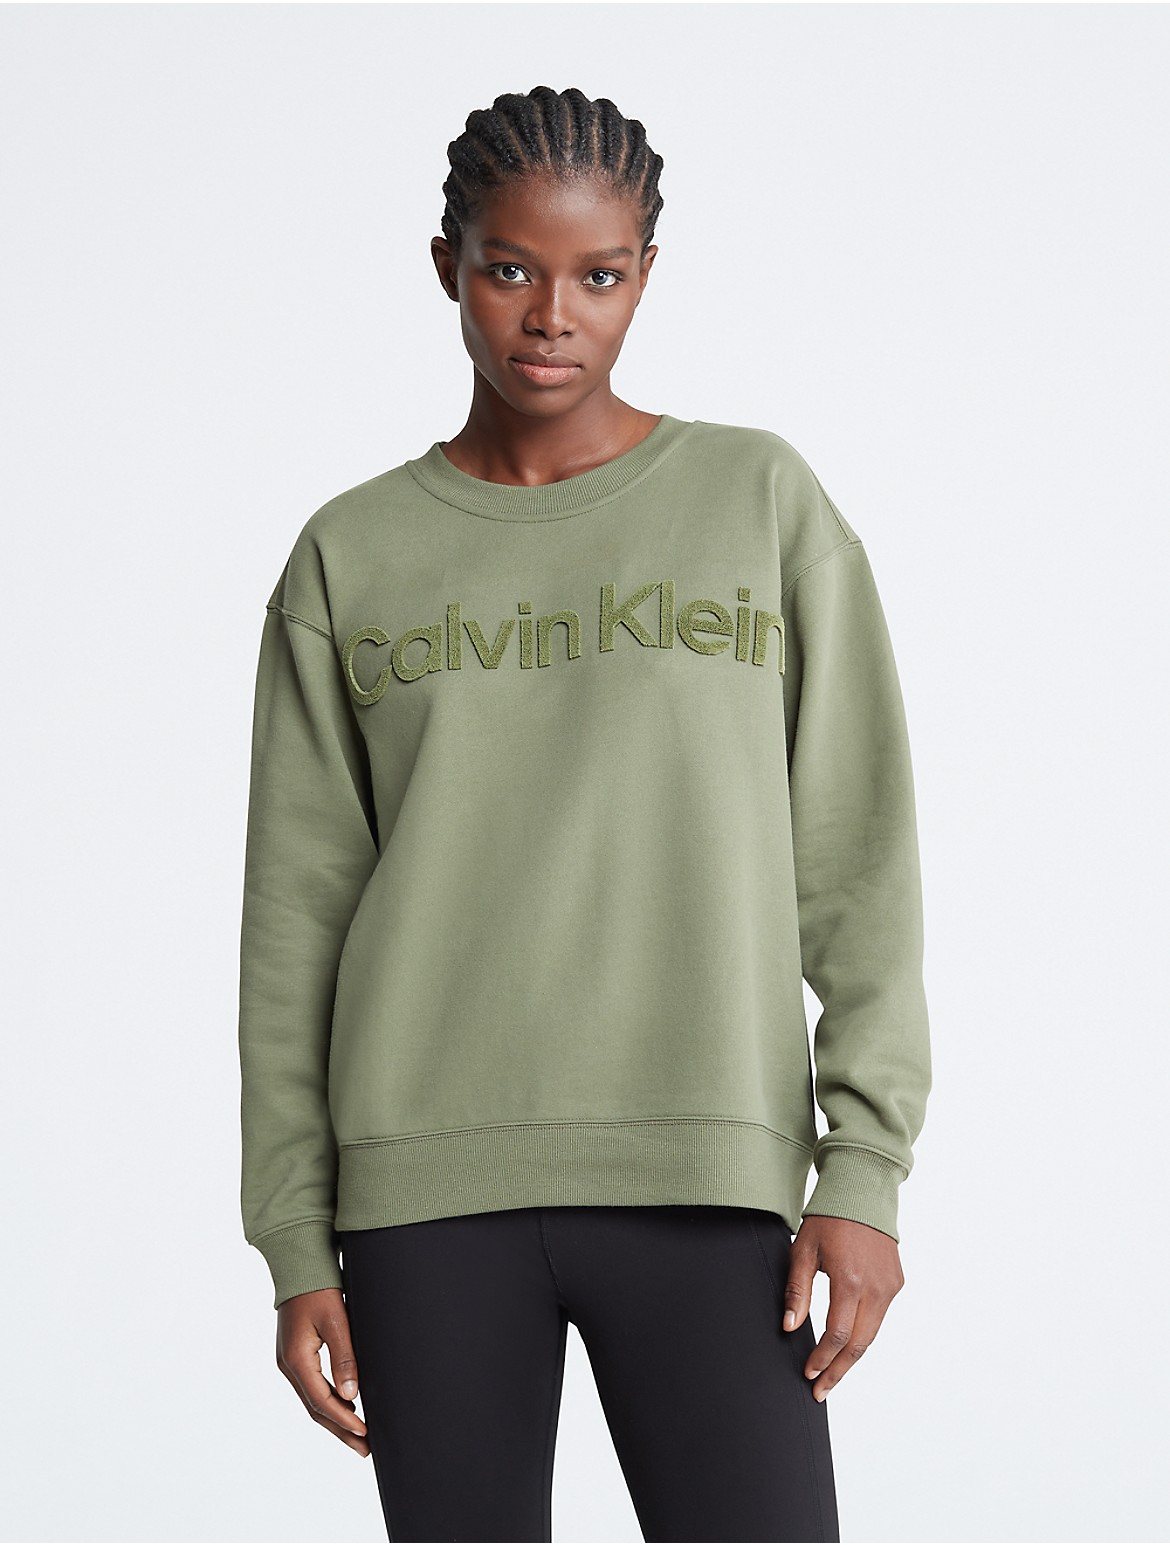 Calvin Klein Women's Velvet Crewneck Sweatshirt - Green - XS